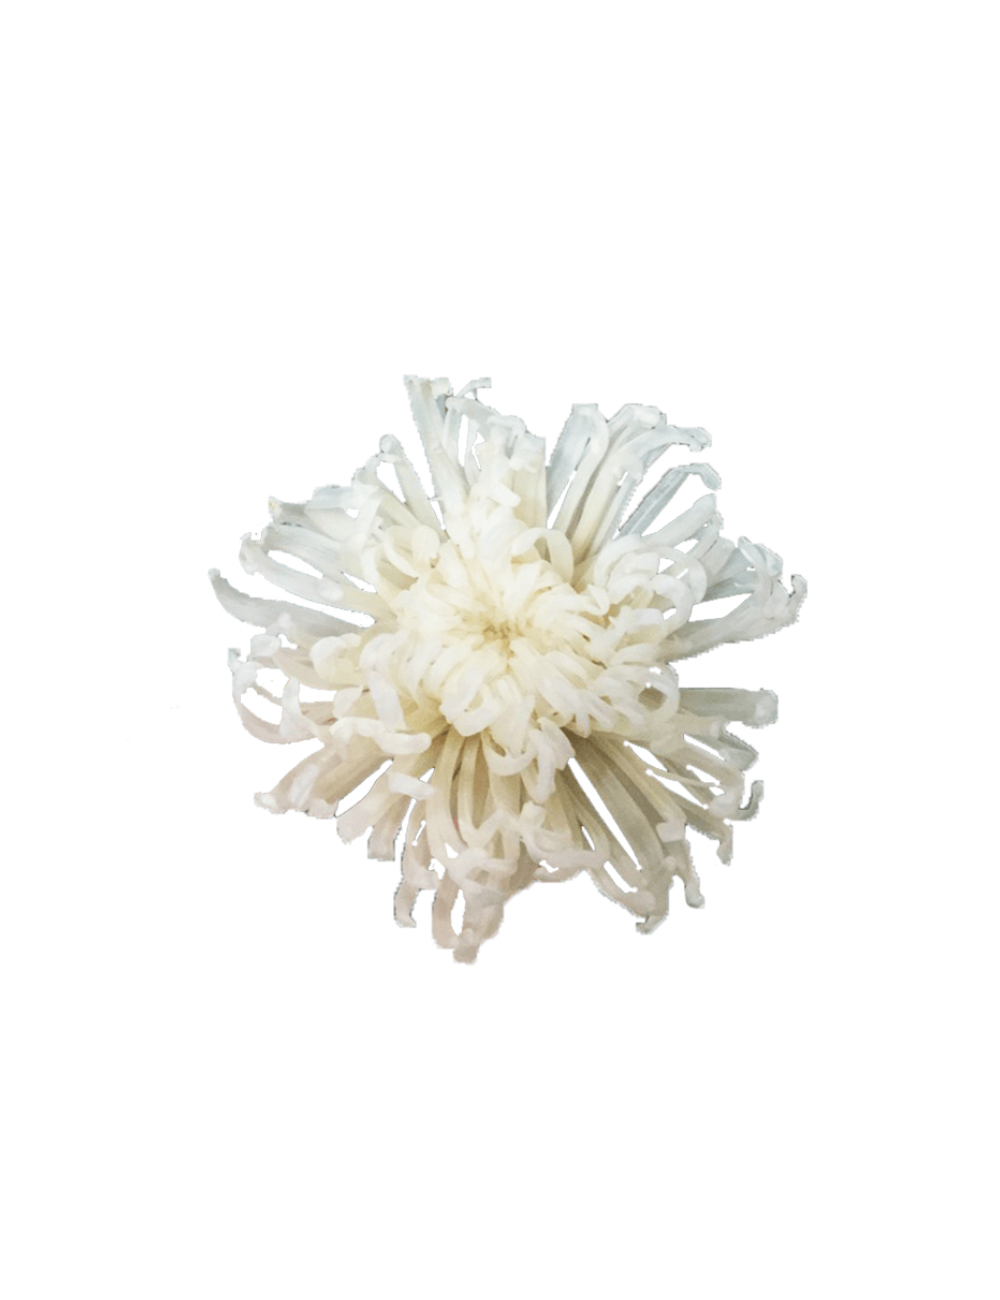 Chrysanthème Anastasia Stabilisé blanche